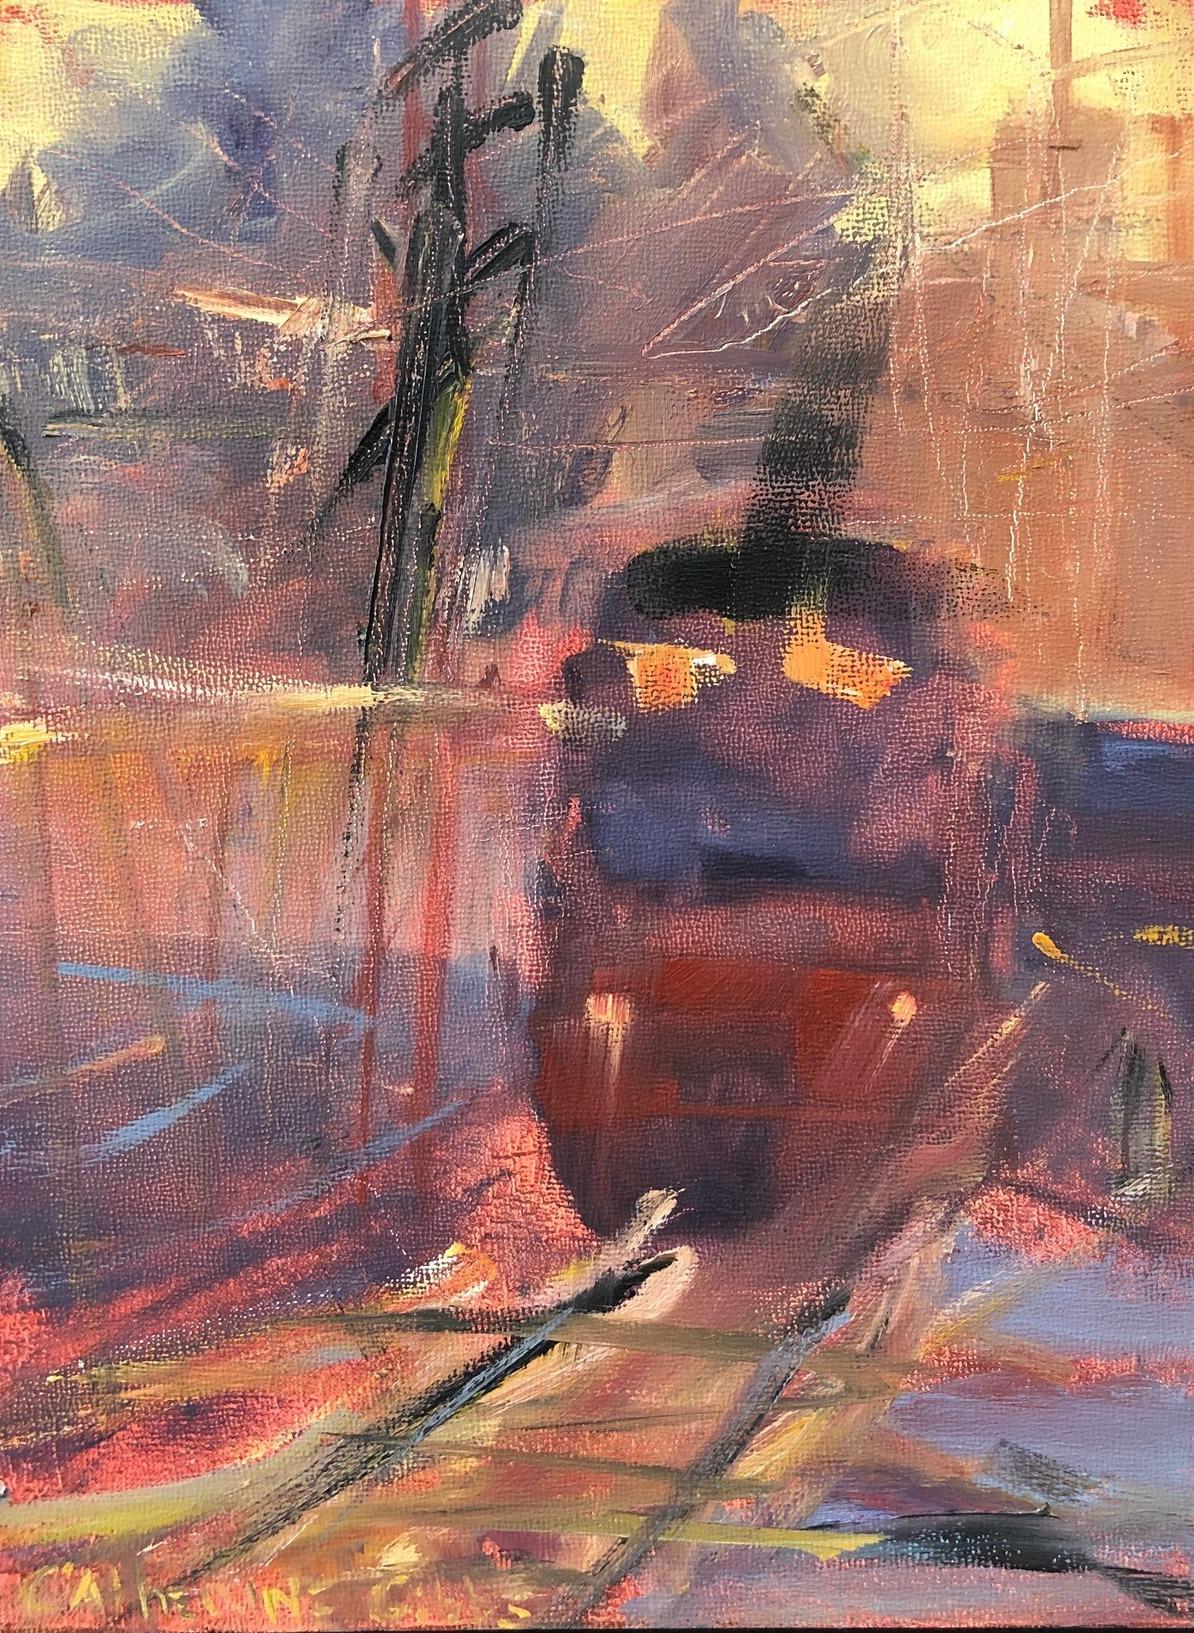 Landscape Painting Catherine Picard-Gibbs - « The Train Yard », peinture à l'huile abstraite, chemin de fer, oranges, jaunes, bleu